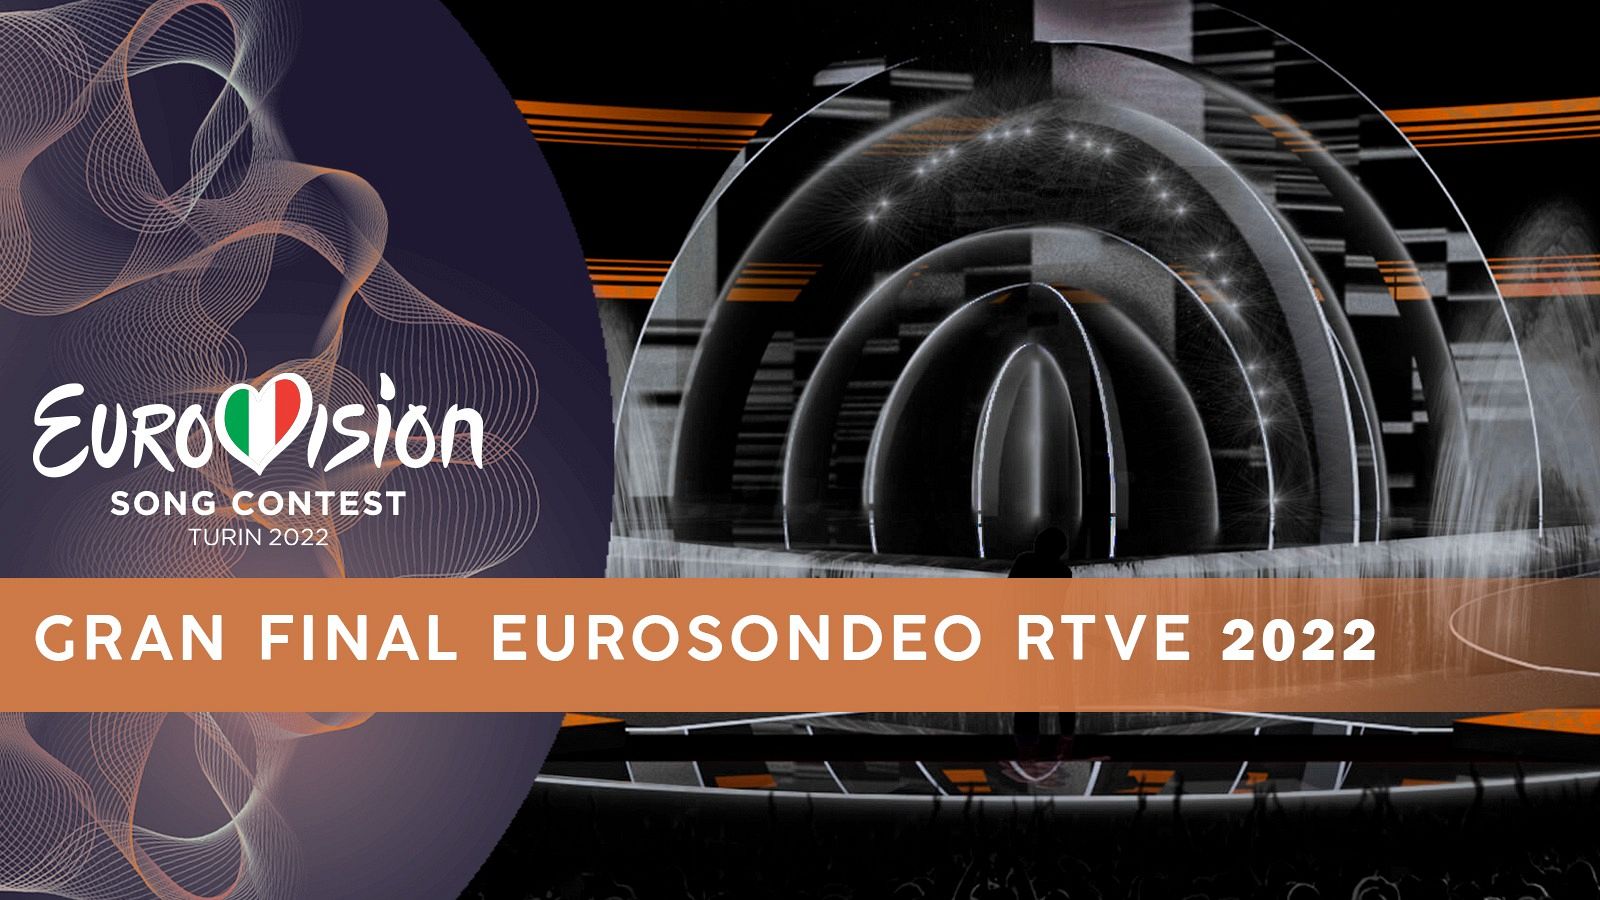 Gran Final del Eurosondeo RTVE 2022 (RECAP)